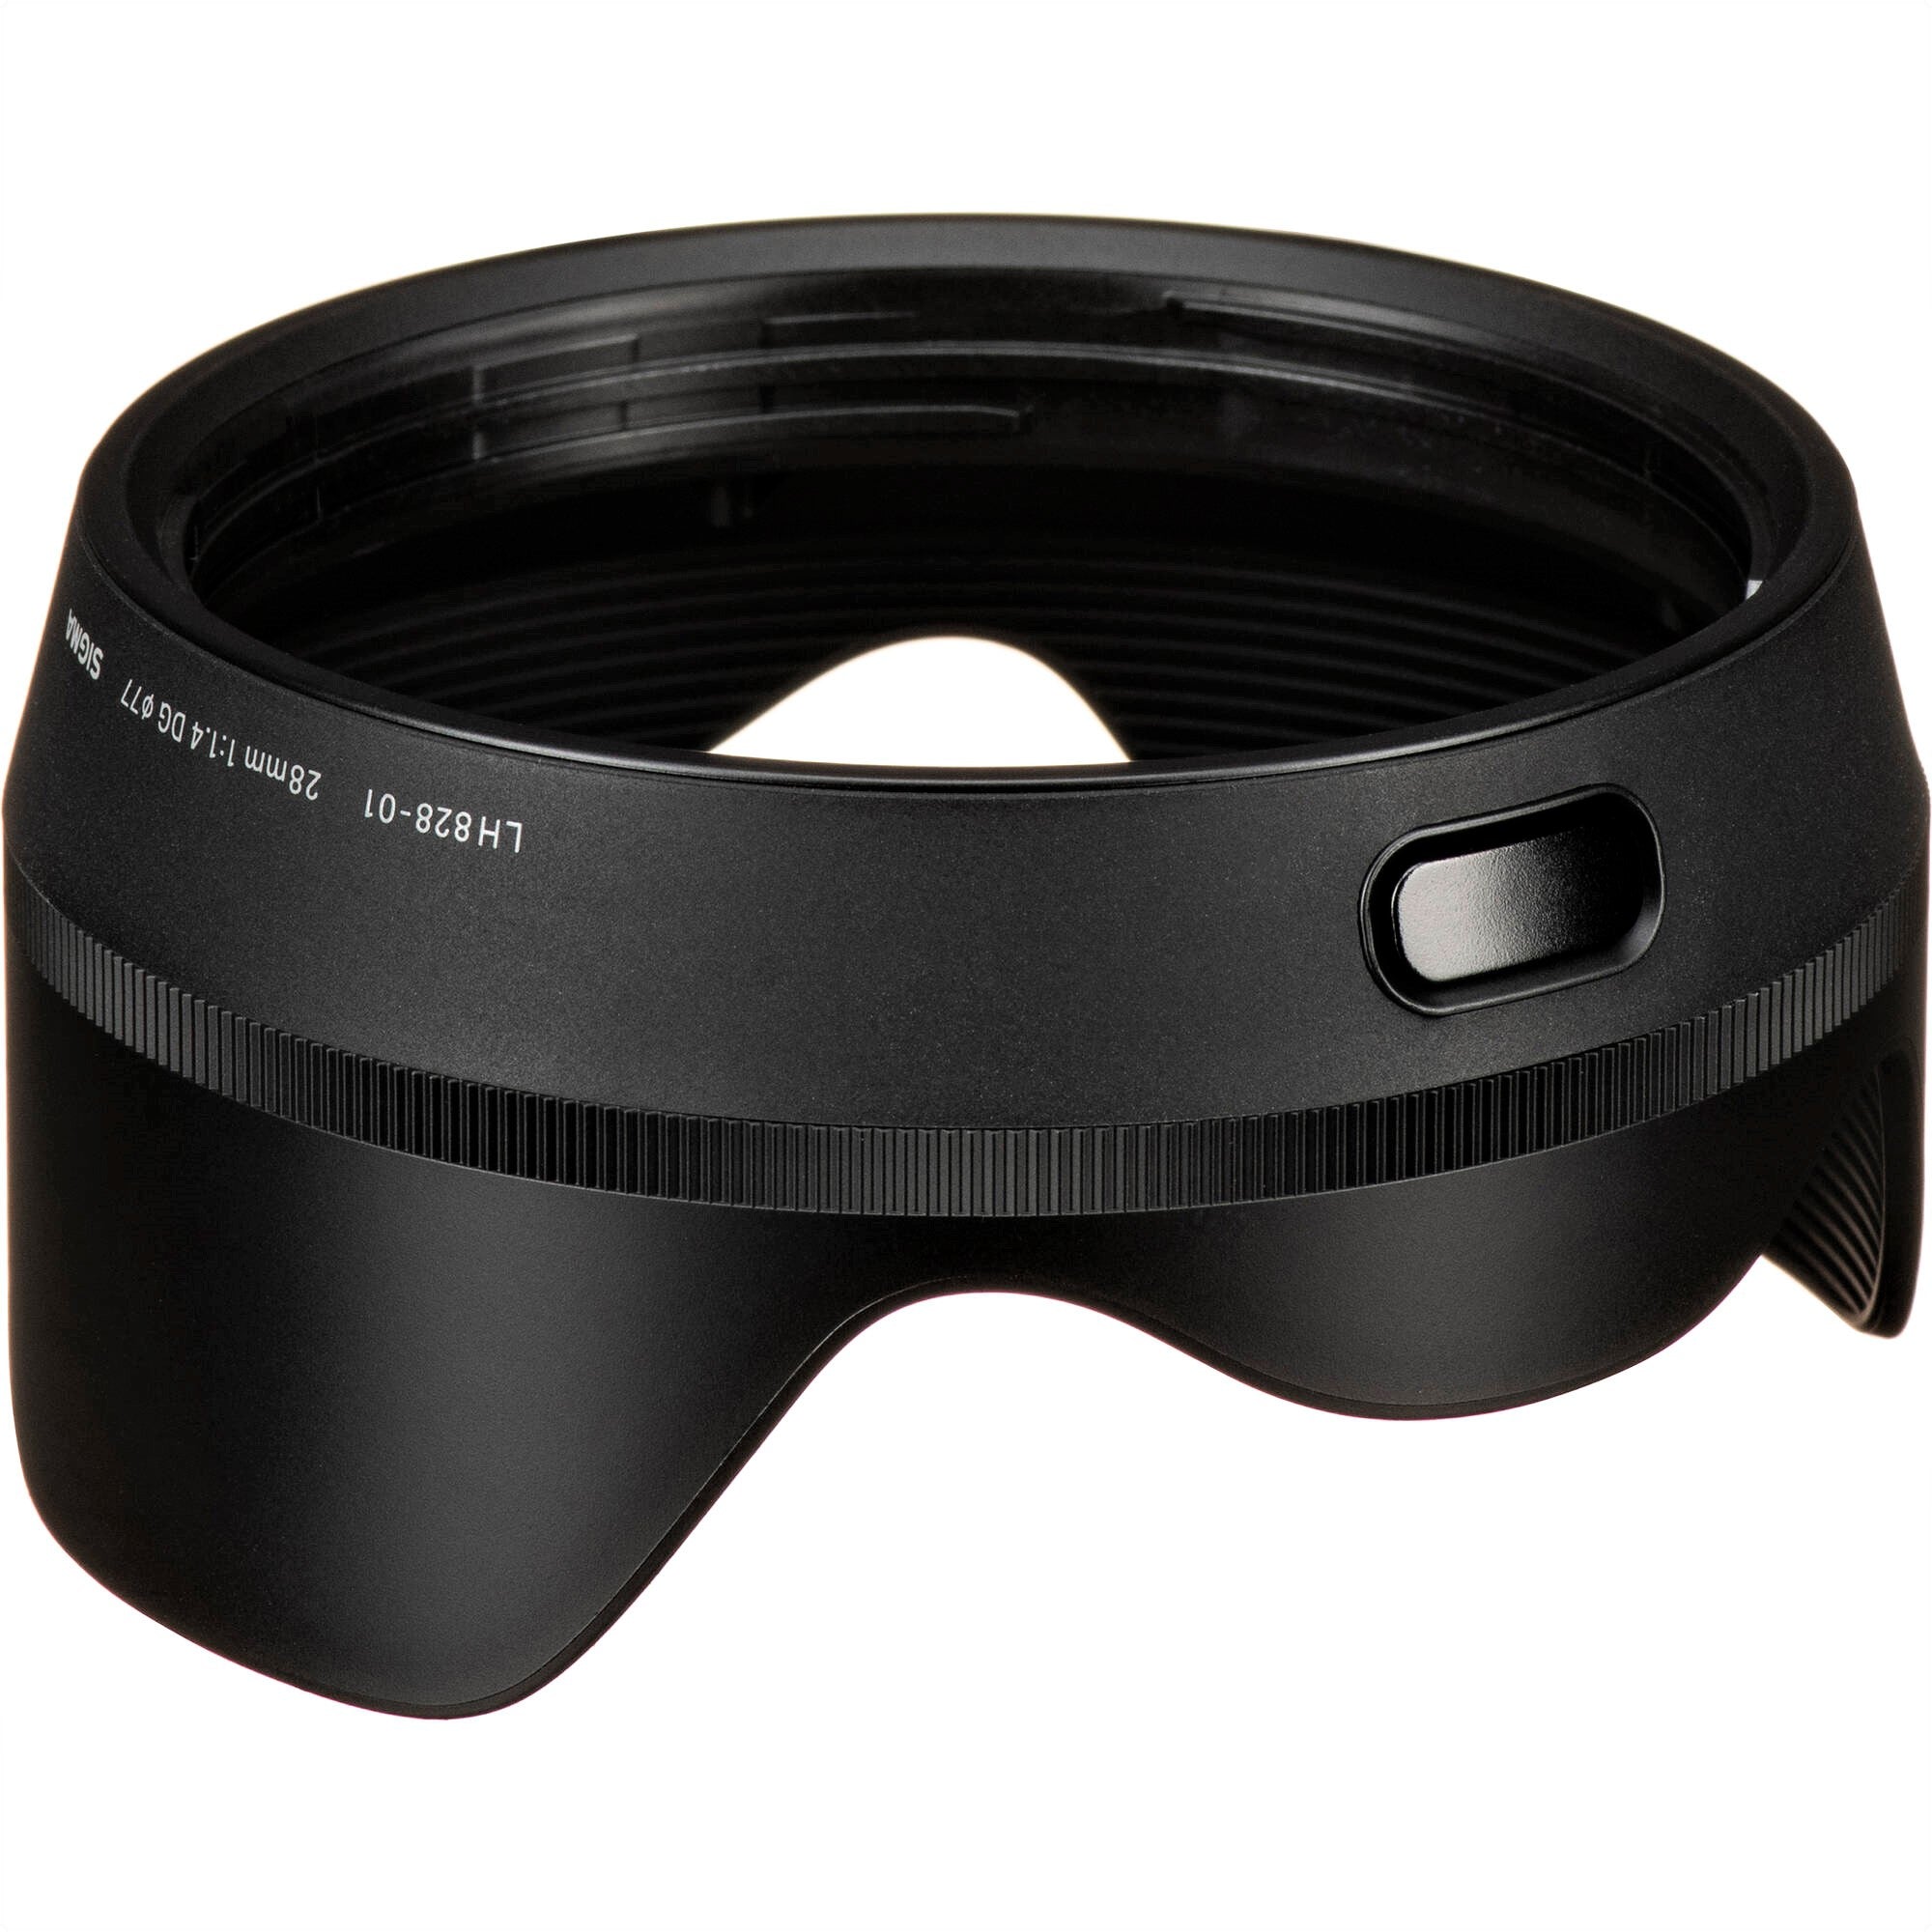 Sigma Lens Hood for 28mm F1.4 DG HSM Art Lens